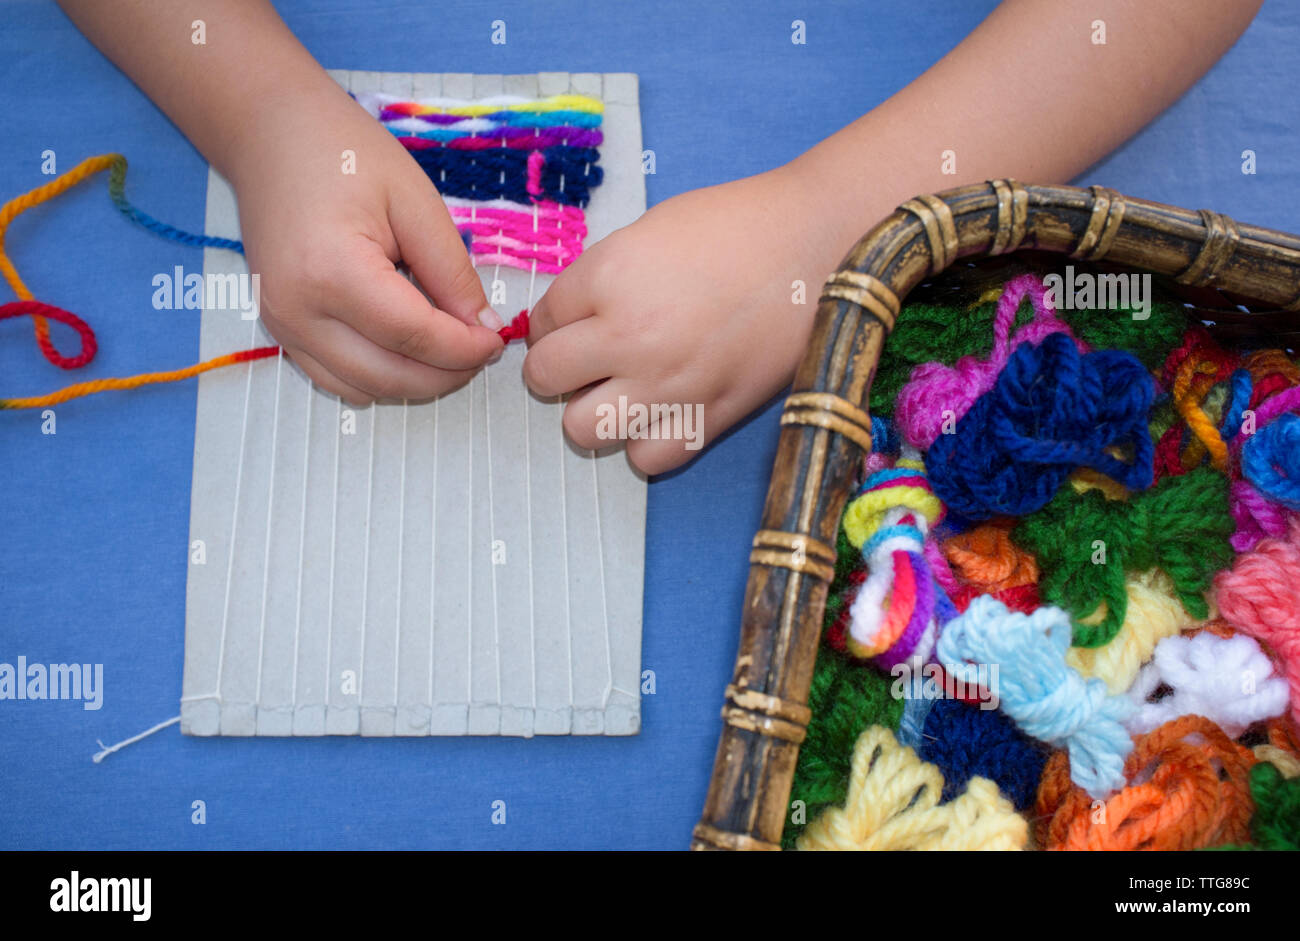 Kind Mädchen lernen Karton Weben zu benutzen Webstuhl Stockfotografie -  Alamy